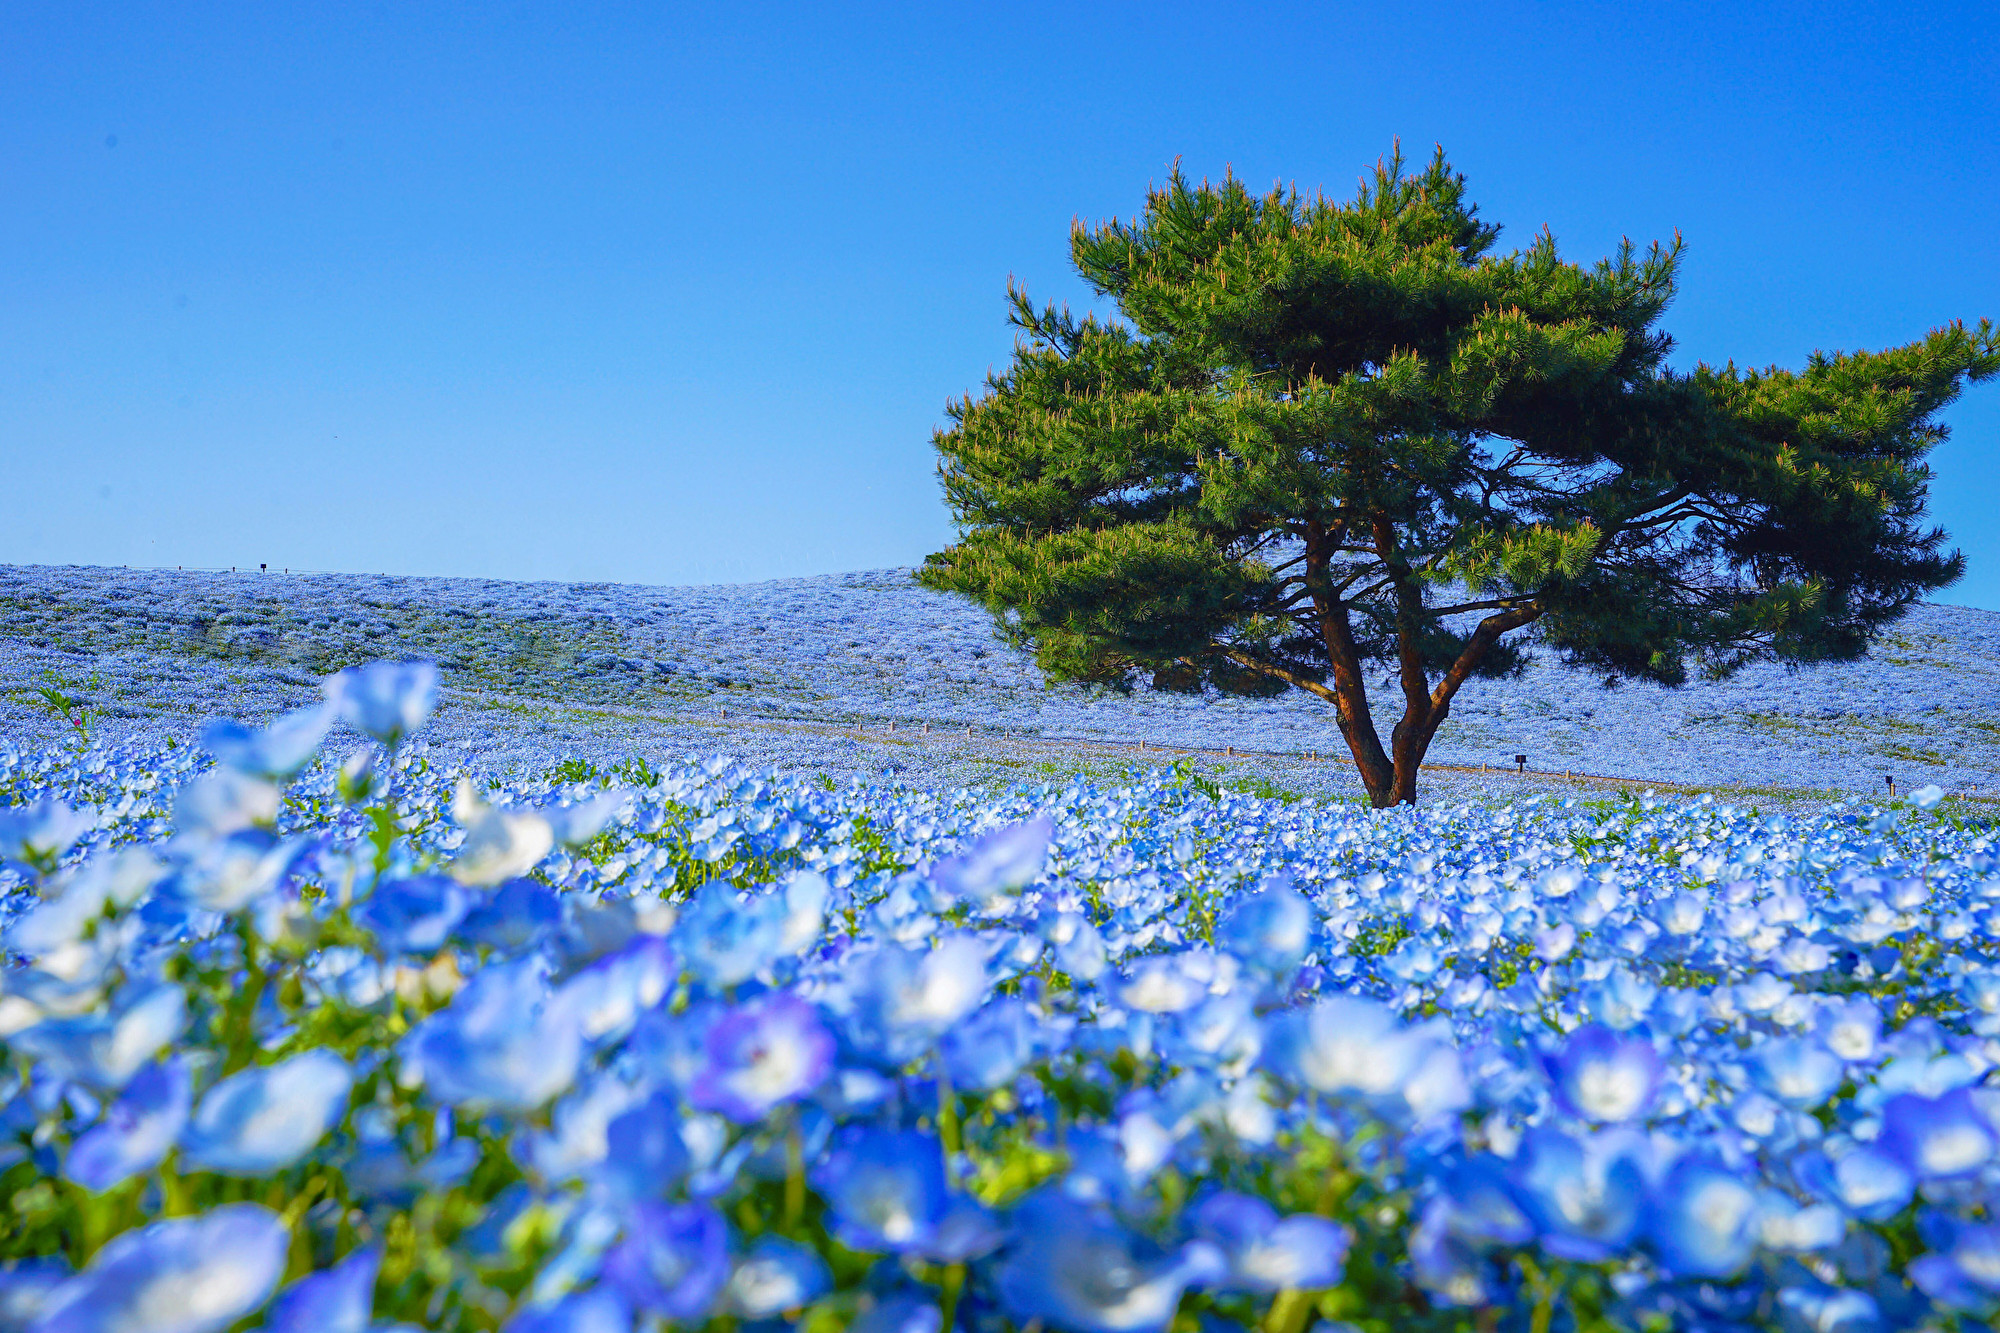 日本国家公园的粉蝶花盛开形成蓝色花海 国营常陆海滨公园 大纪元